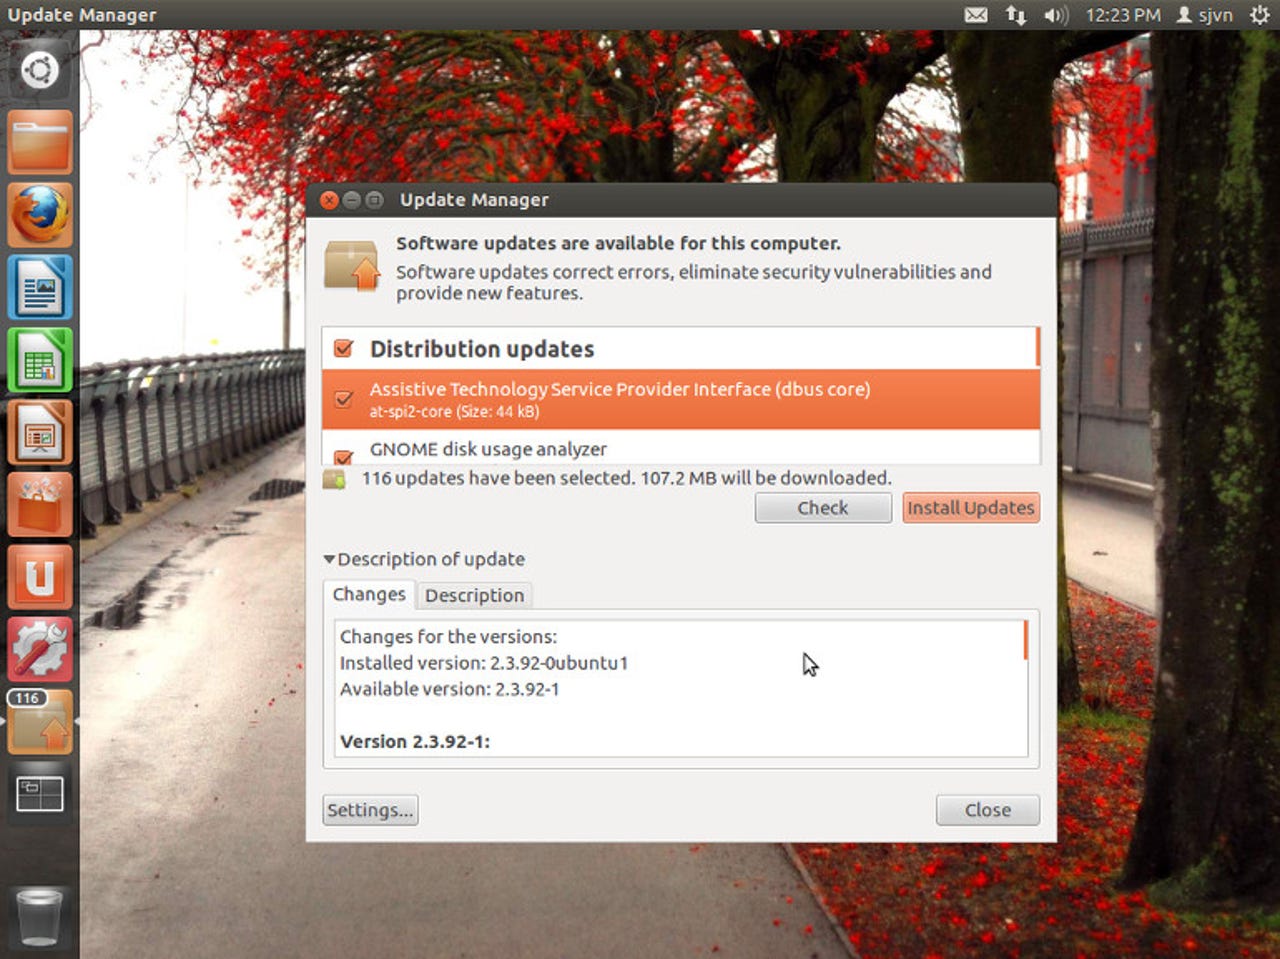 Ubuntu 12.04 Update